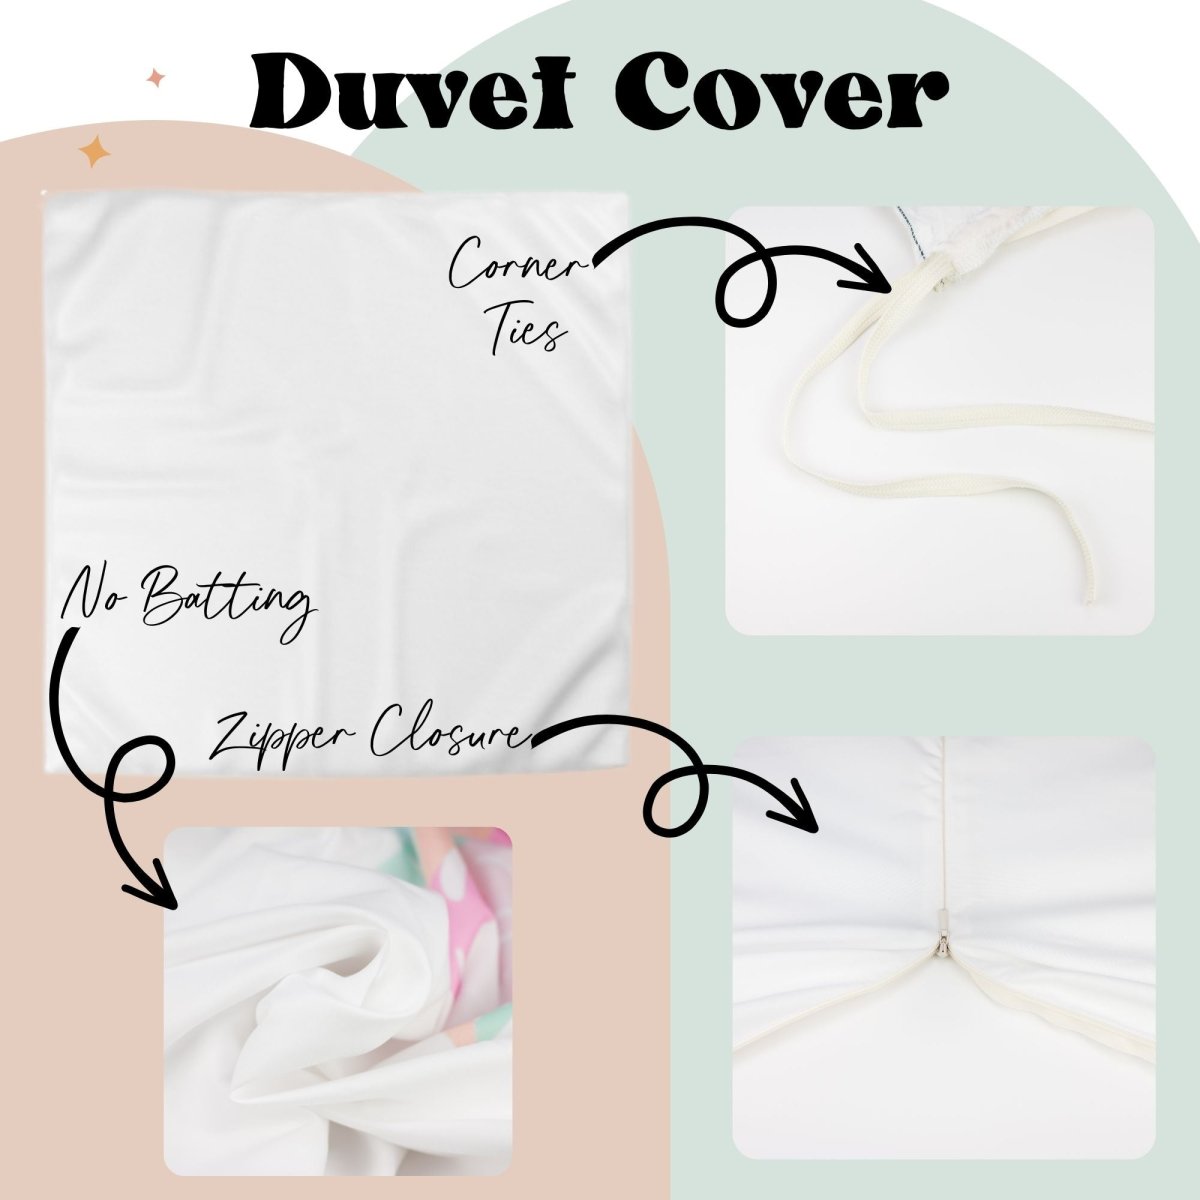 Aqua Floral Kids Bedding Set (Comforter or Duvet Cover) - gender_girl, text, Theme_Floral